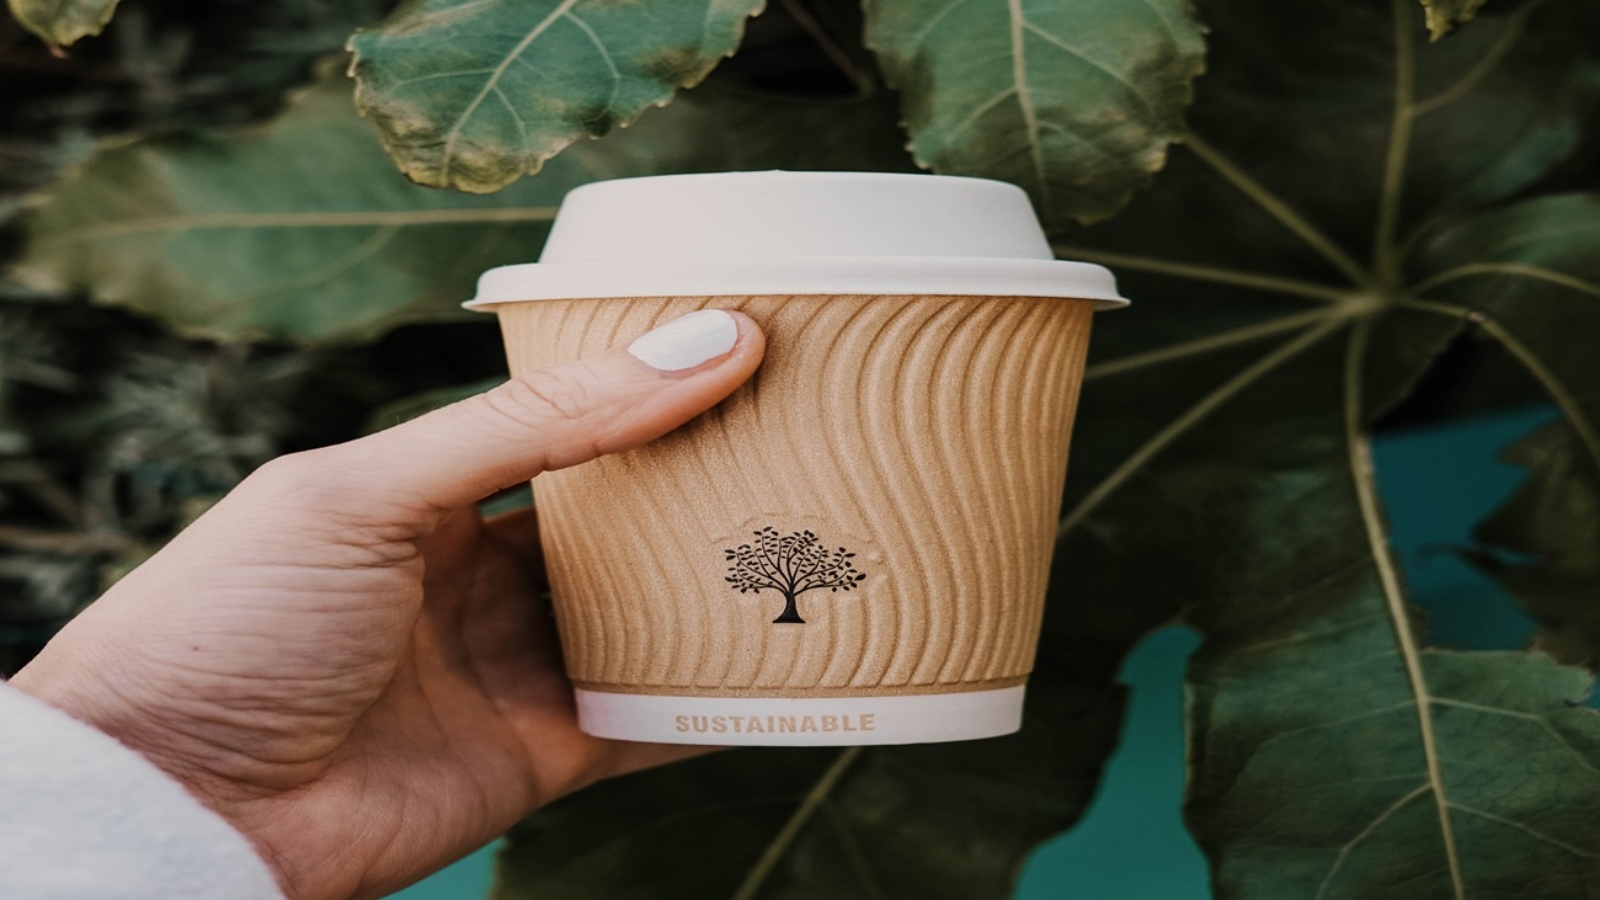 Capa do artigo sobre a preferência do público alvo por empresas sustentáveis. Foto de uma mão segurando um copo de café descartável na frente de algumas árvores. Na embalagem está escrito "sustentável".